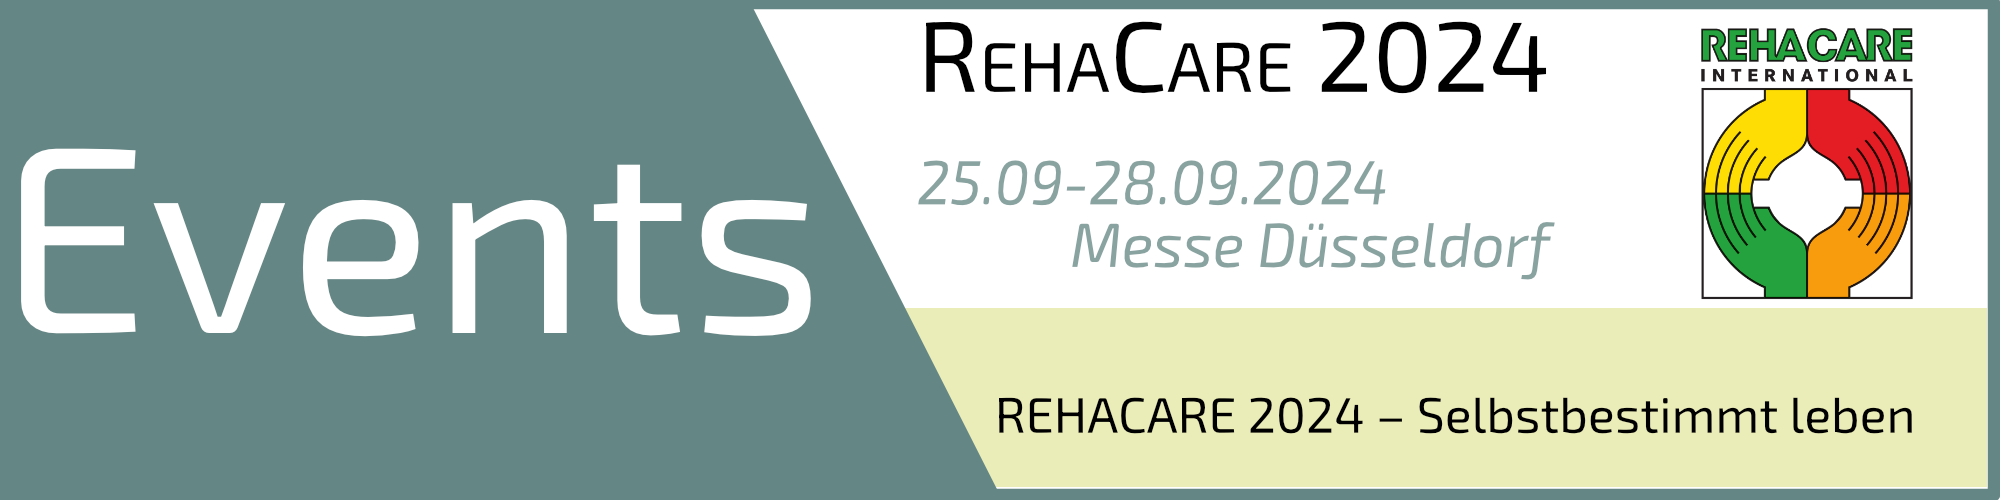 RehaCare-2024